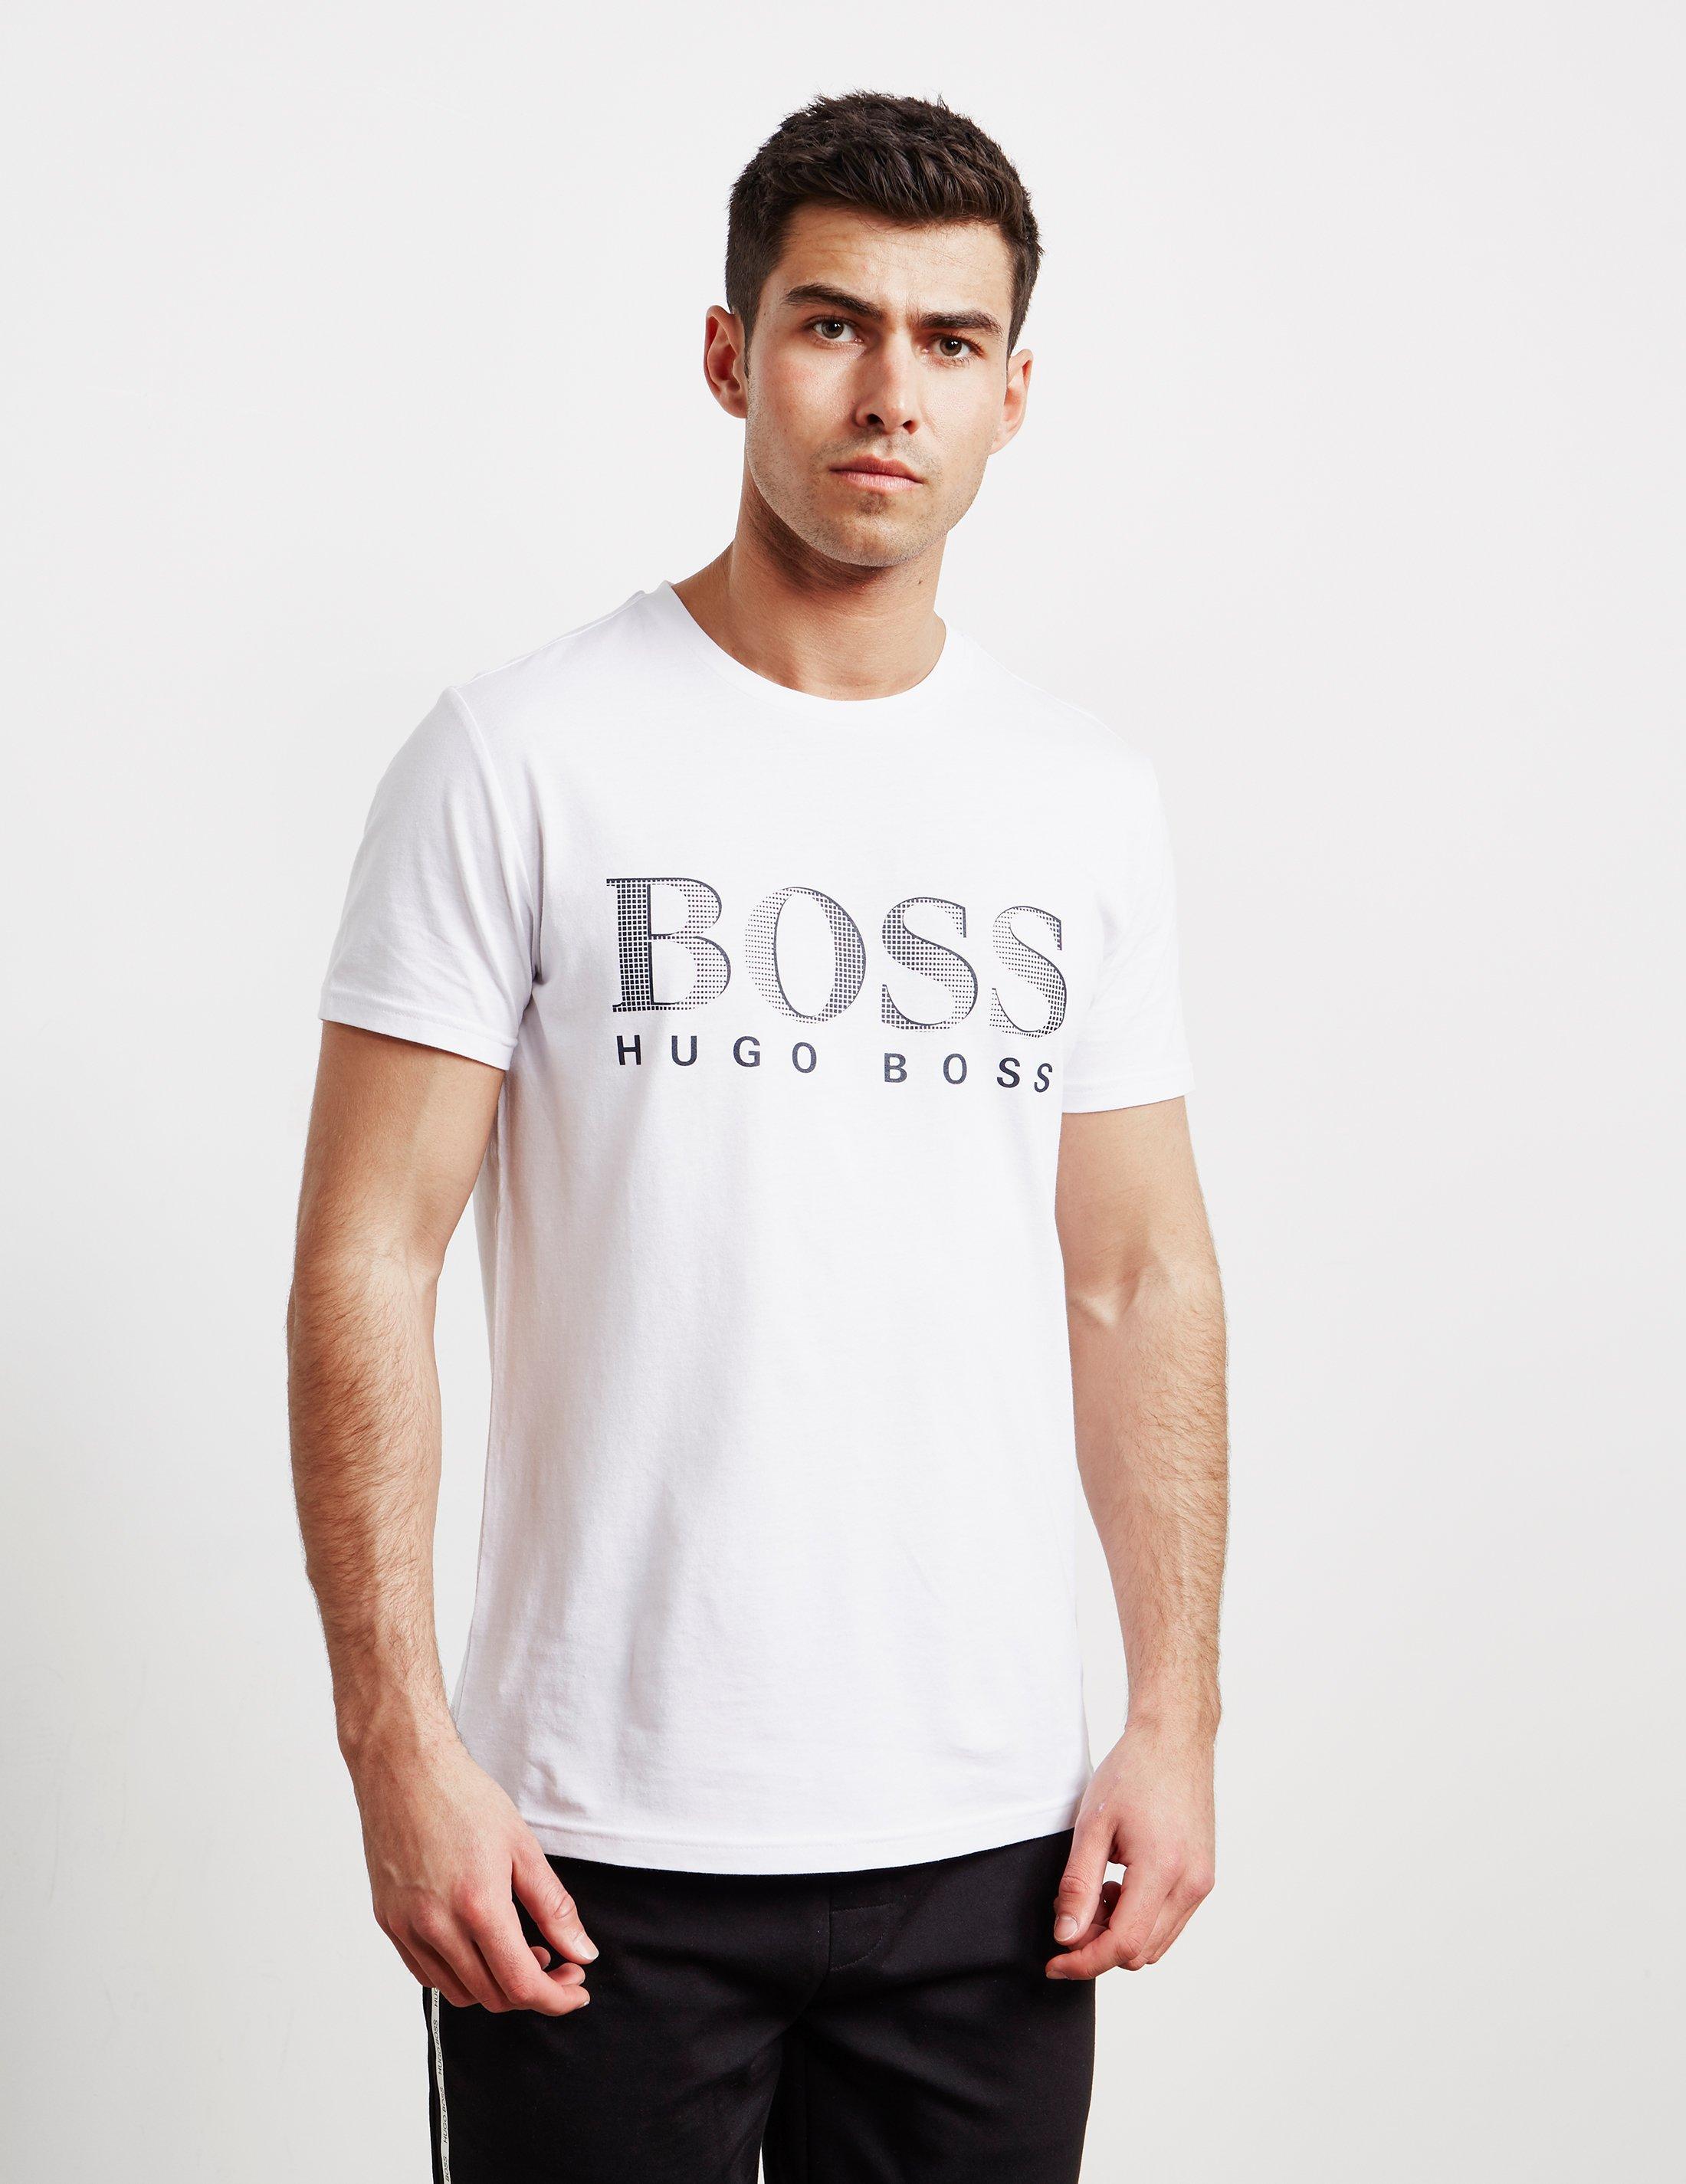 BOSS by Hugo Boss Cotton Core Logo Short Sleeve T-shirt White for Men ...